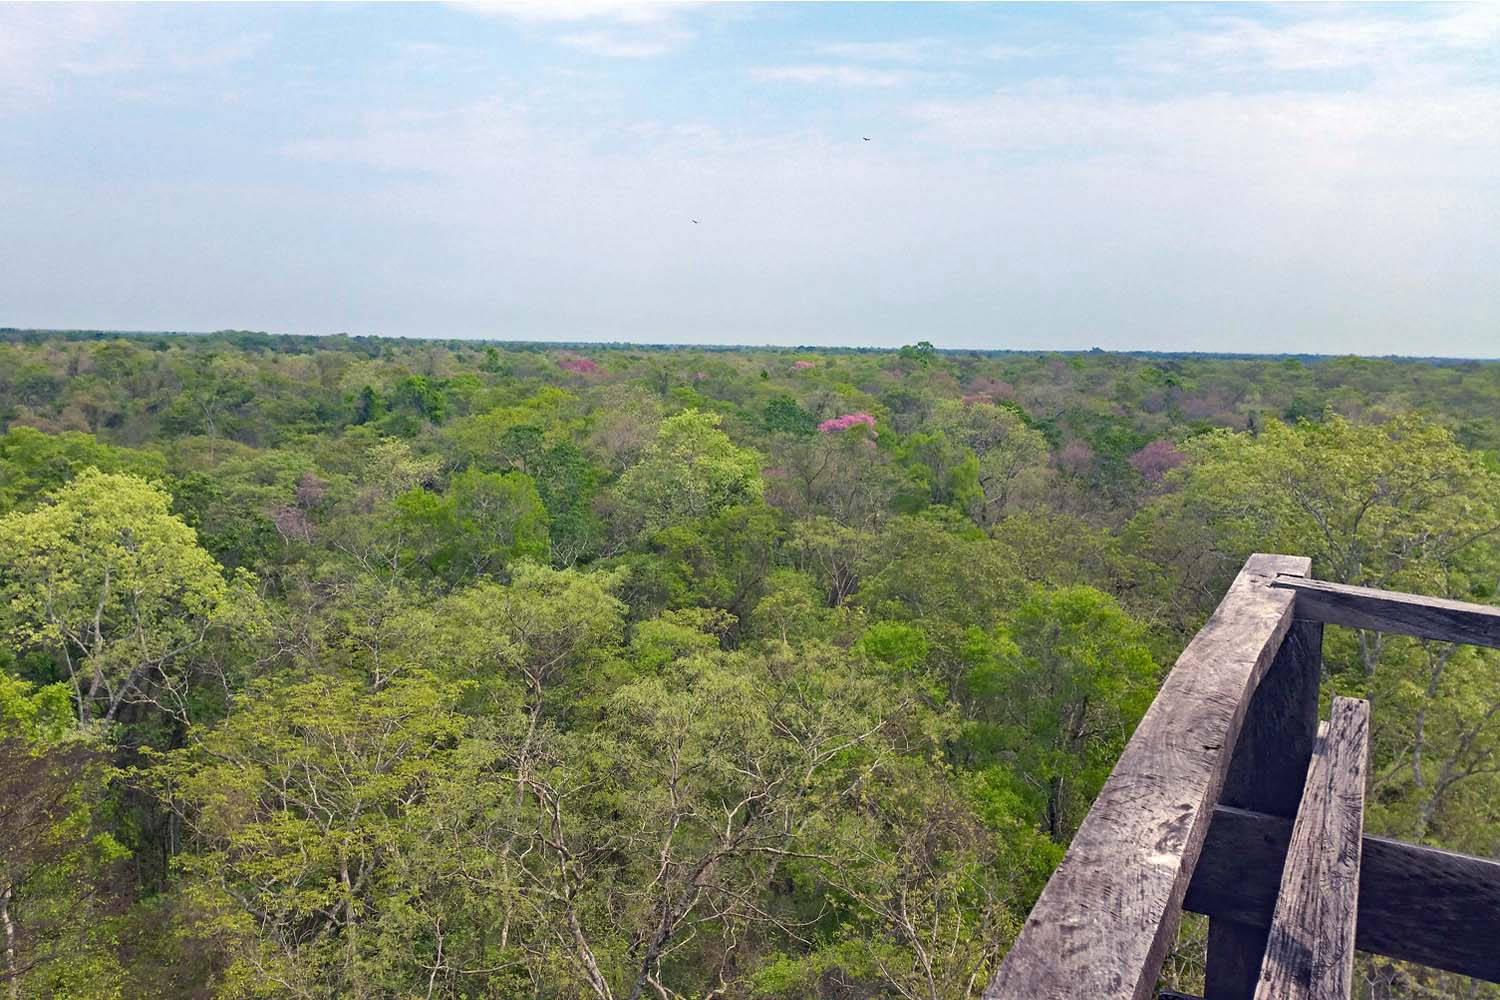 Vista da torre sobre a paisagem circundante no Pantanal